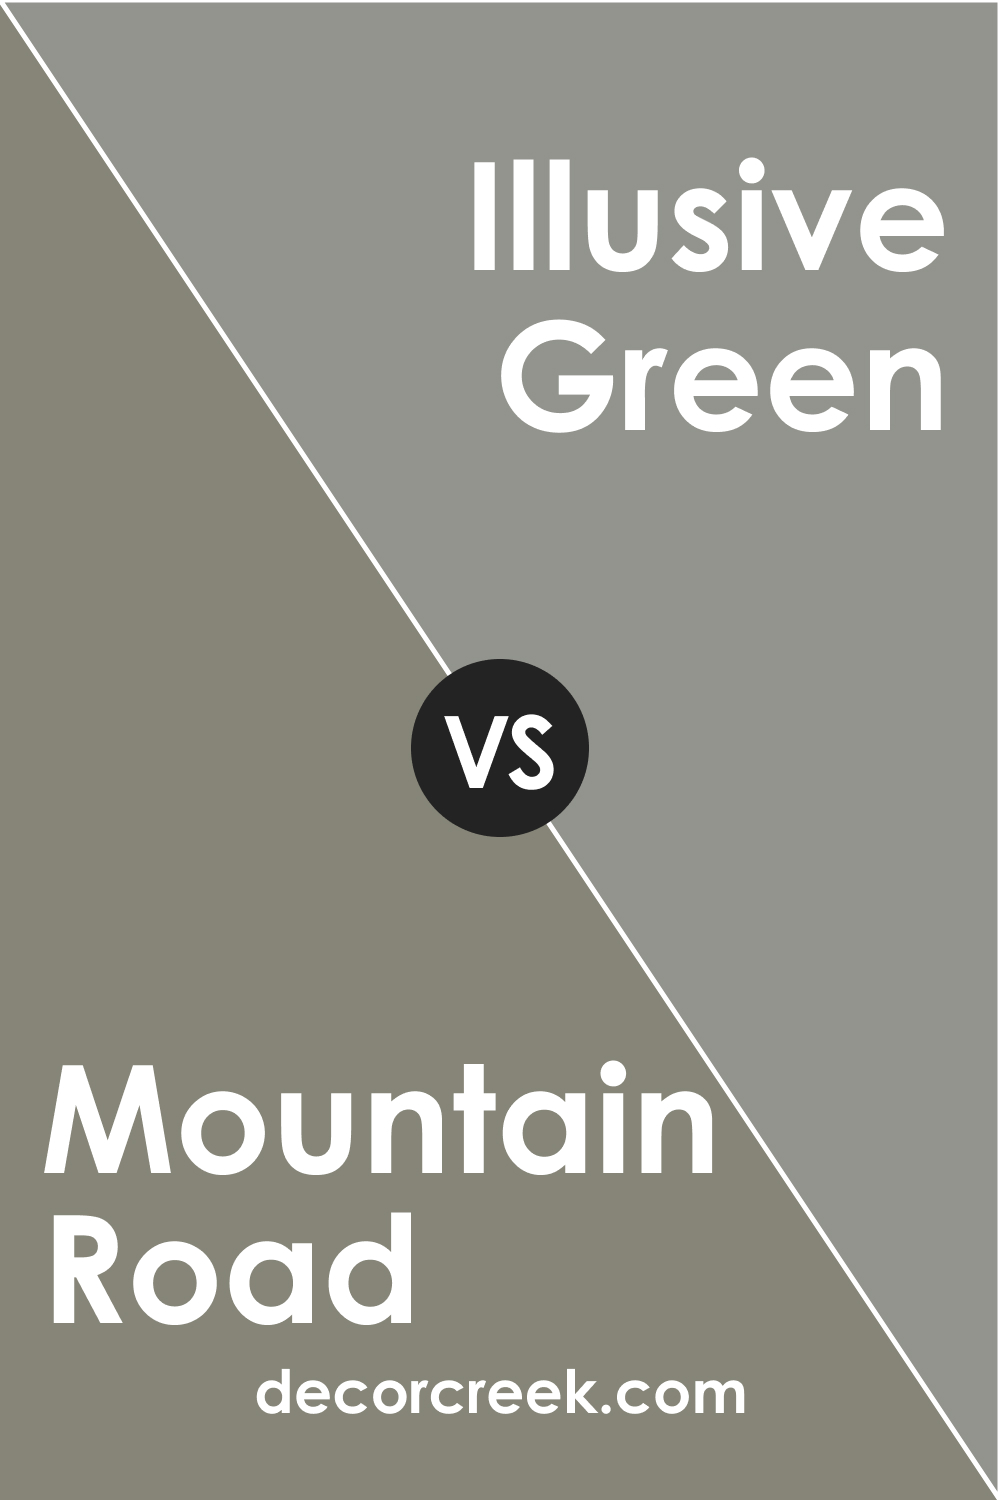 SW 7743 Mountain Road vs. SW 9164 Illusive Green